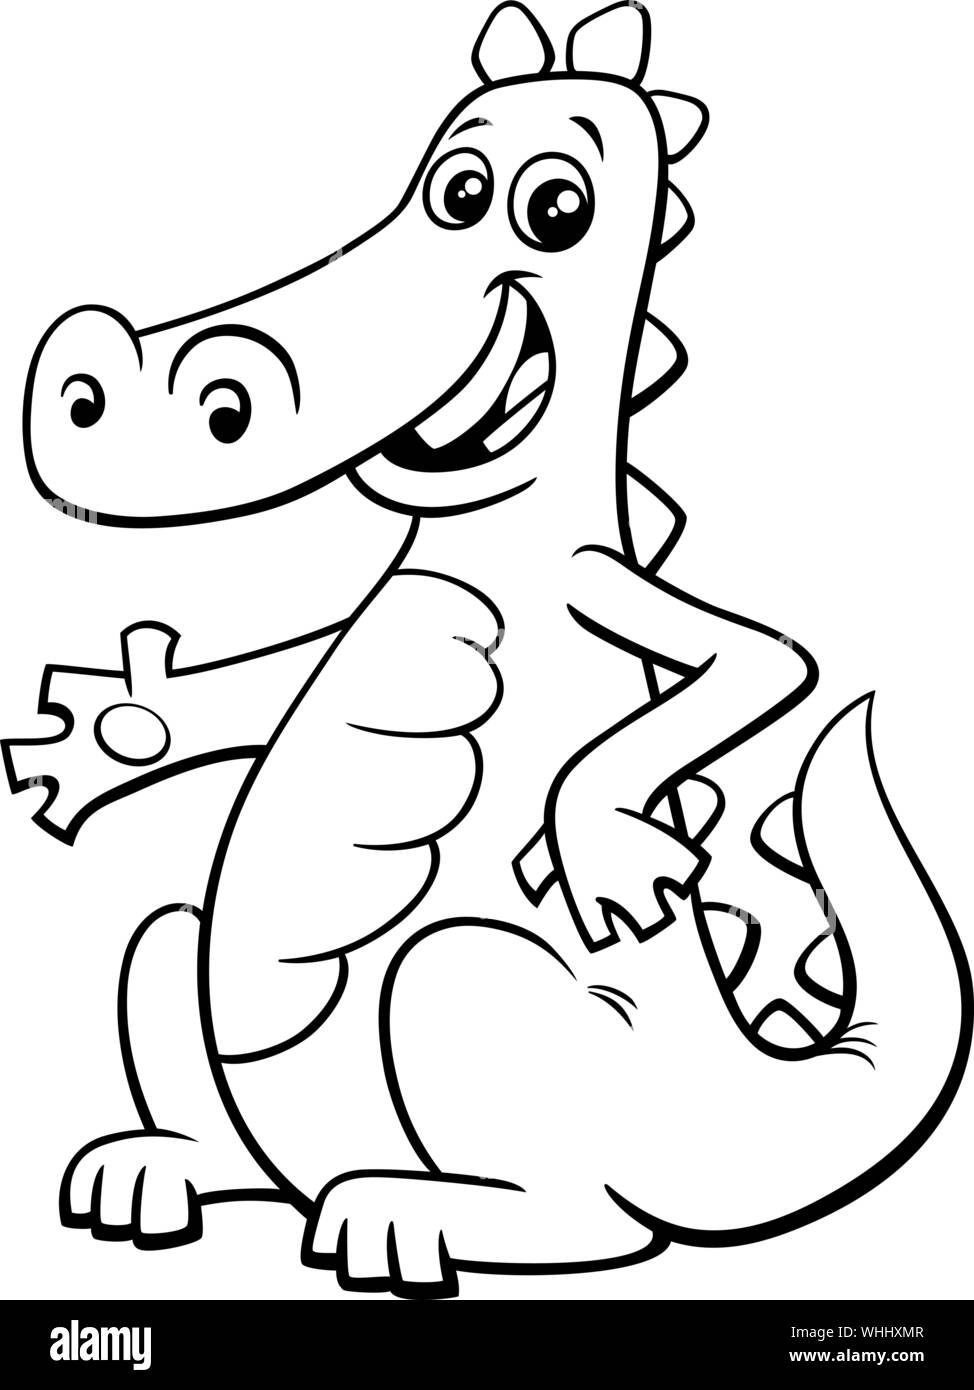 Schwarze und Weiße Cartoon Abbildung: Funny Dragon Fantasy Tier Charakter Malbuch Stock Vektor